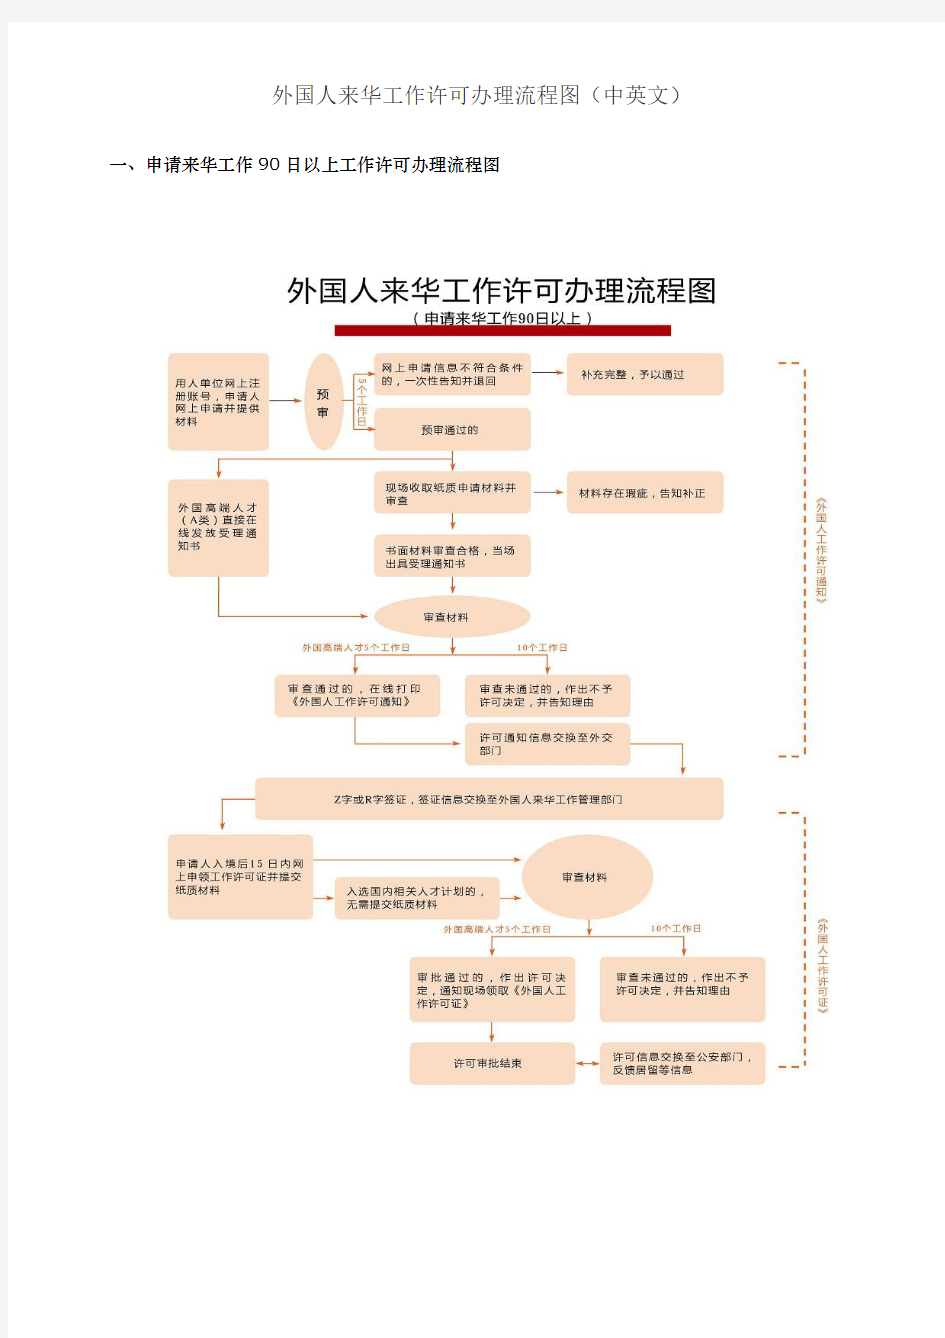 外国人来华工作许可办理流程图(中、英文)